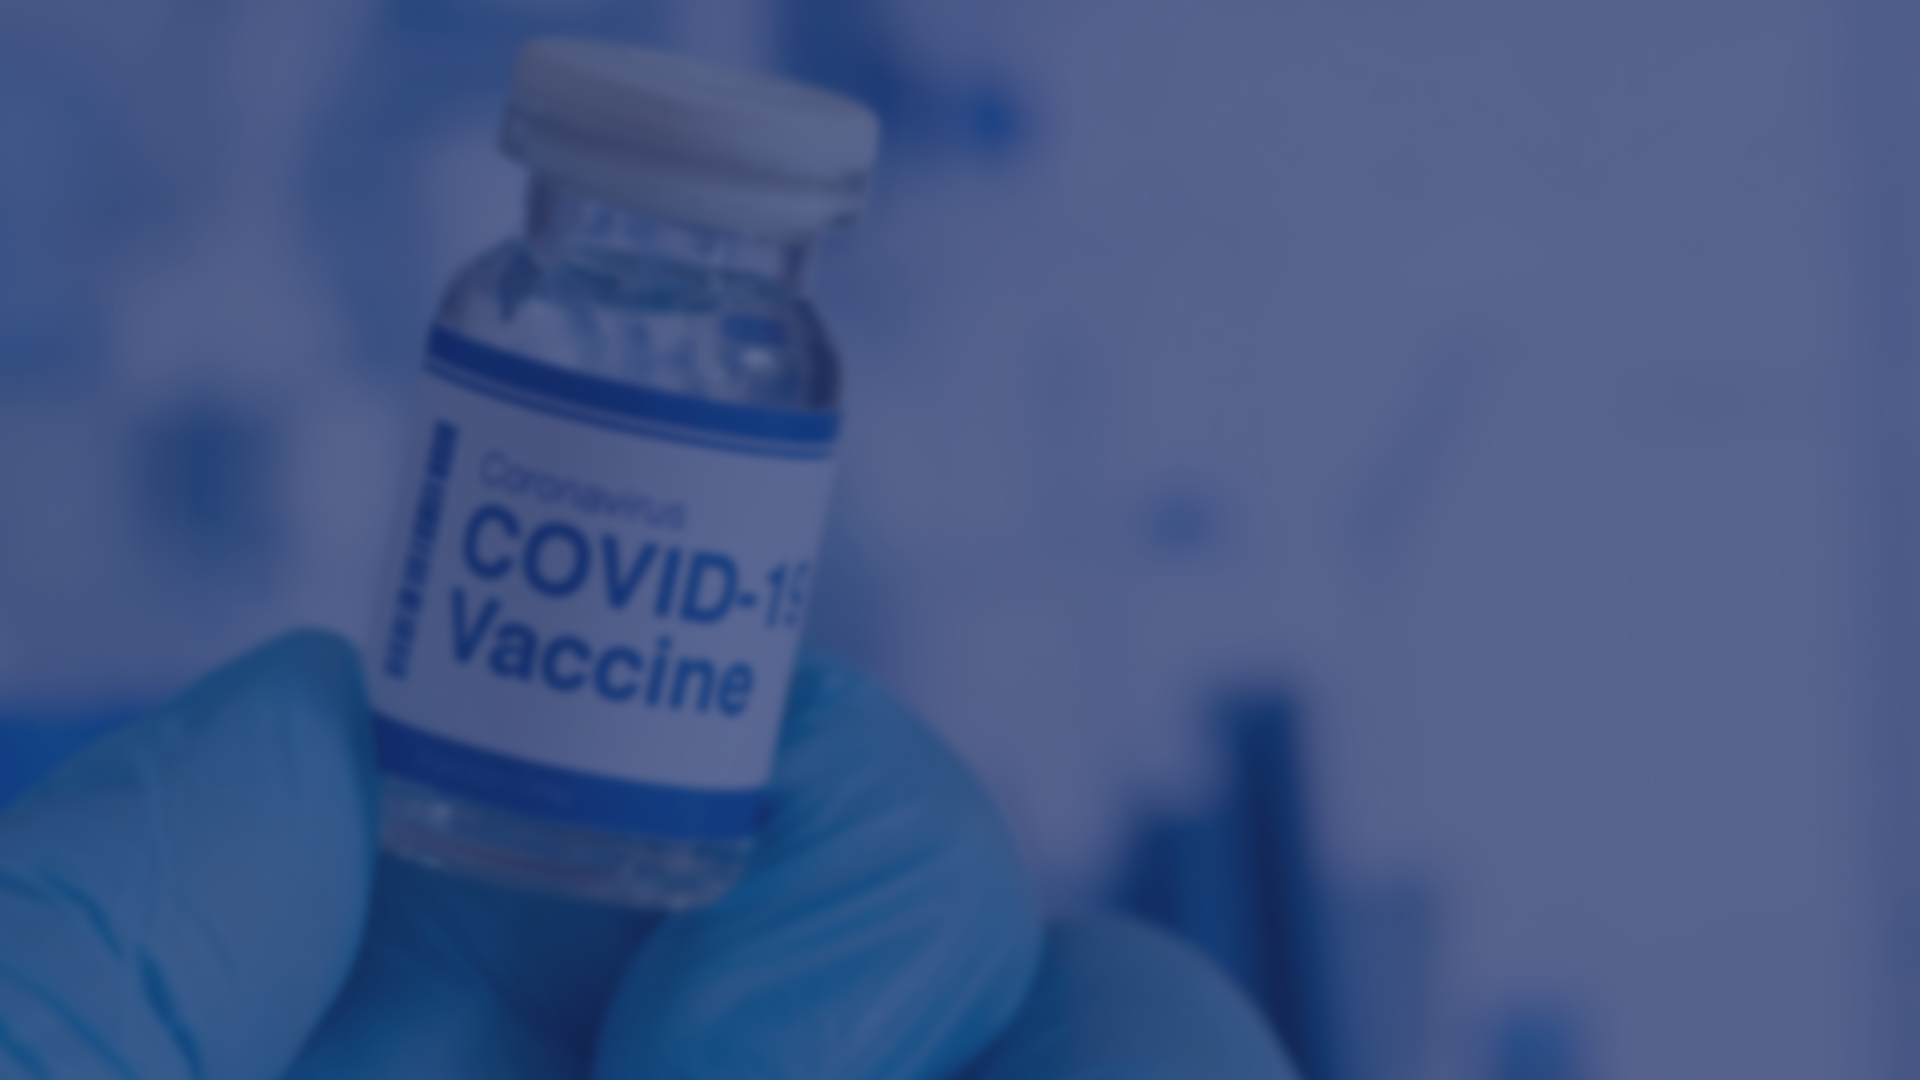 New report indicates COVID-19 vaccines saved Australia’s economy